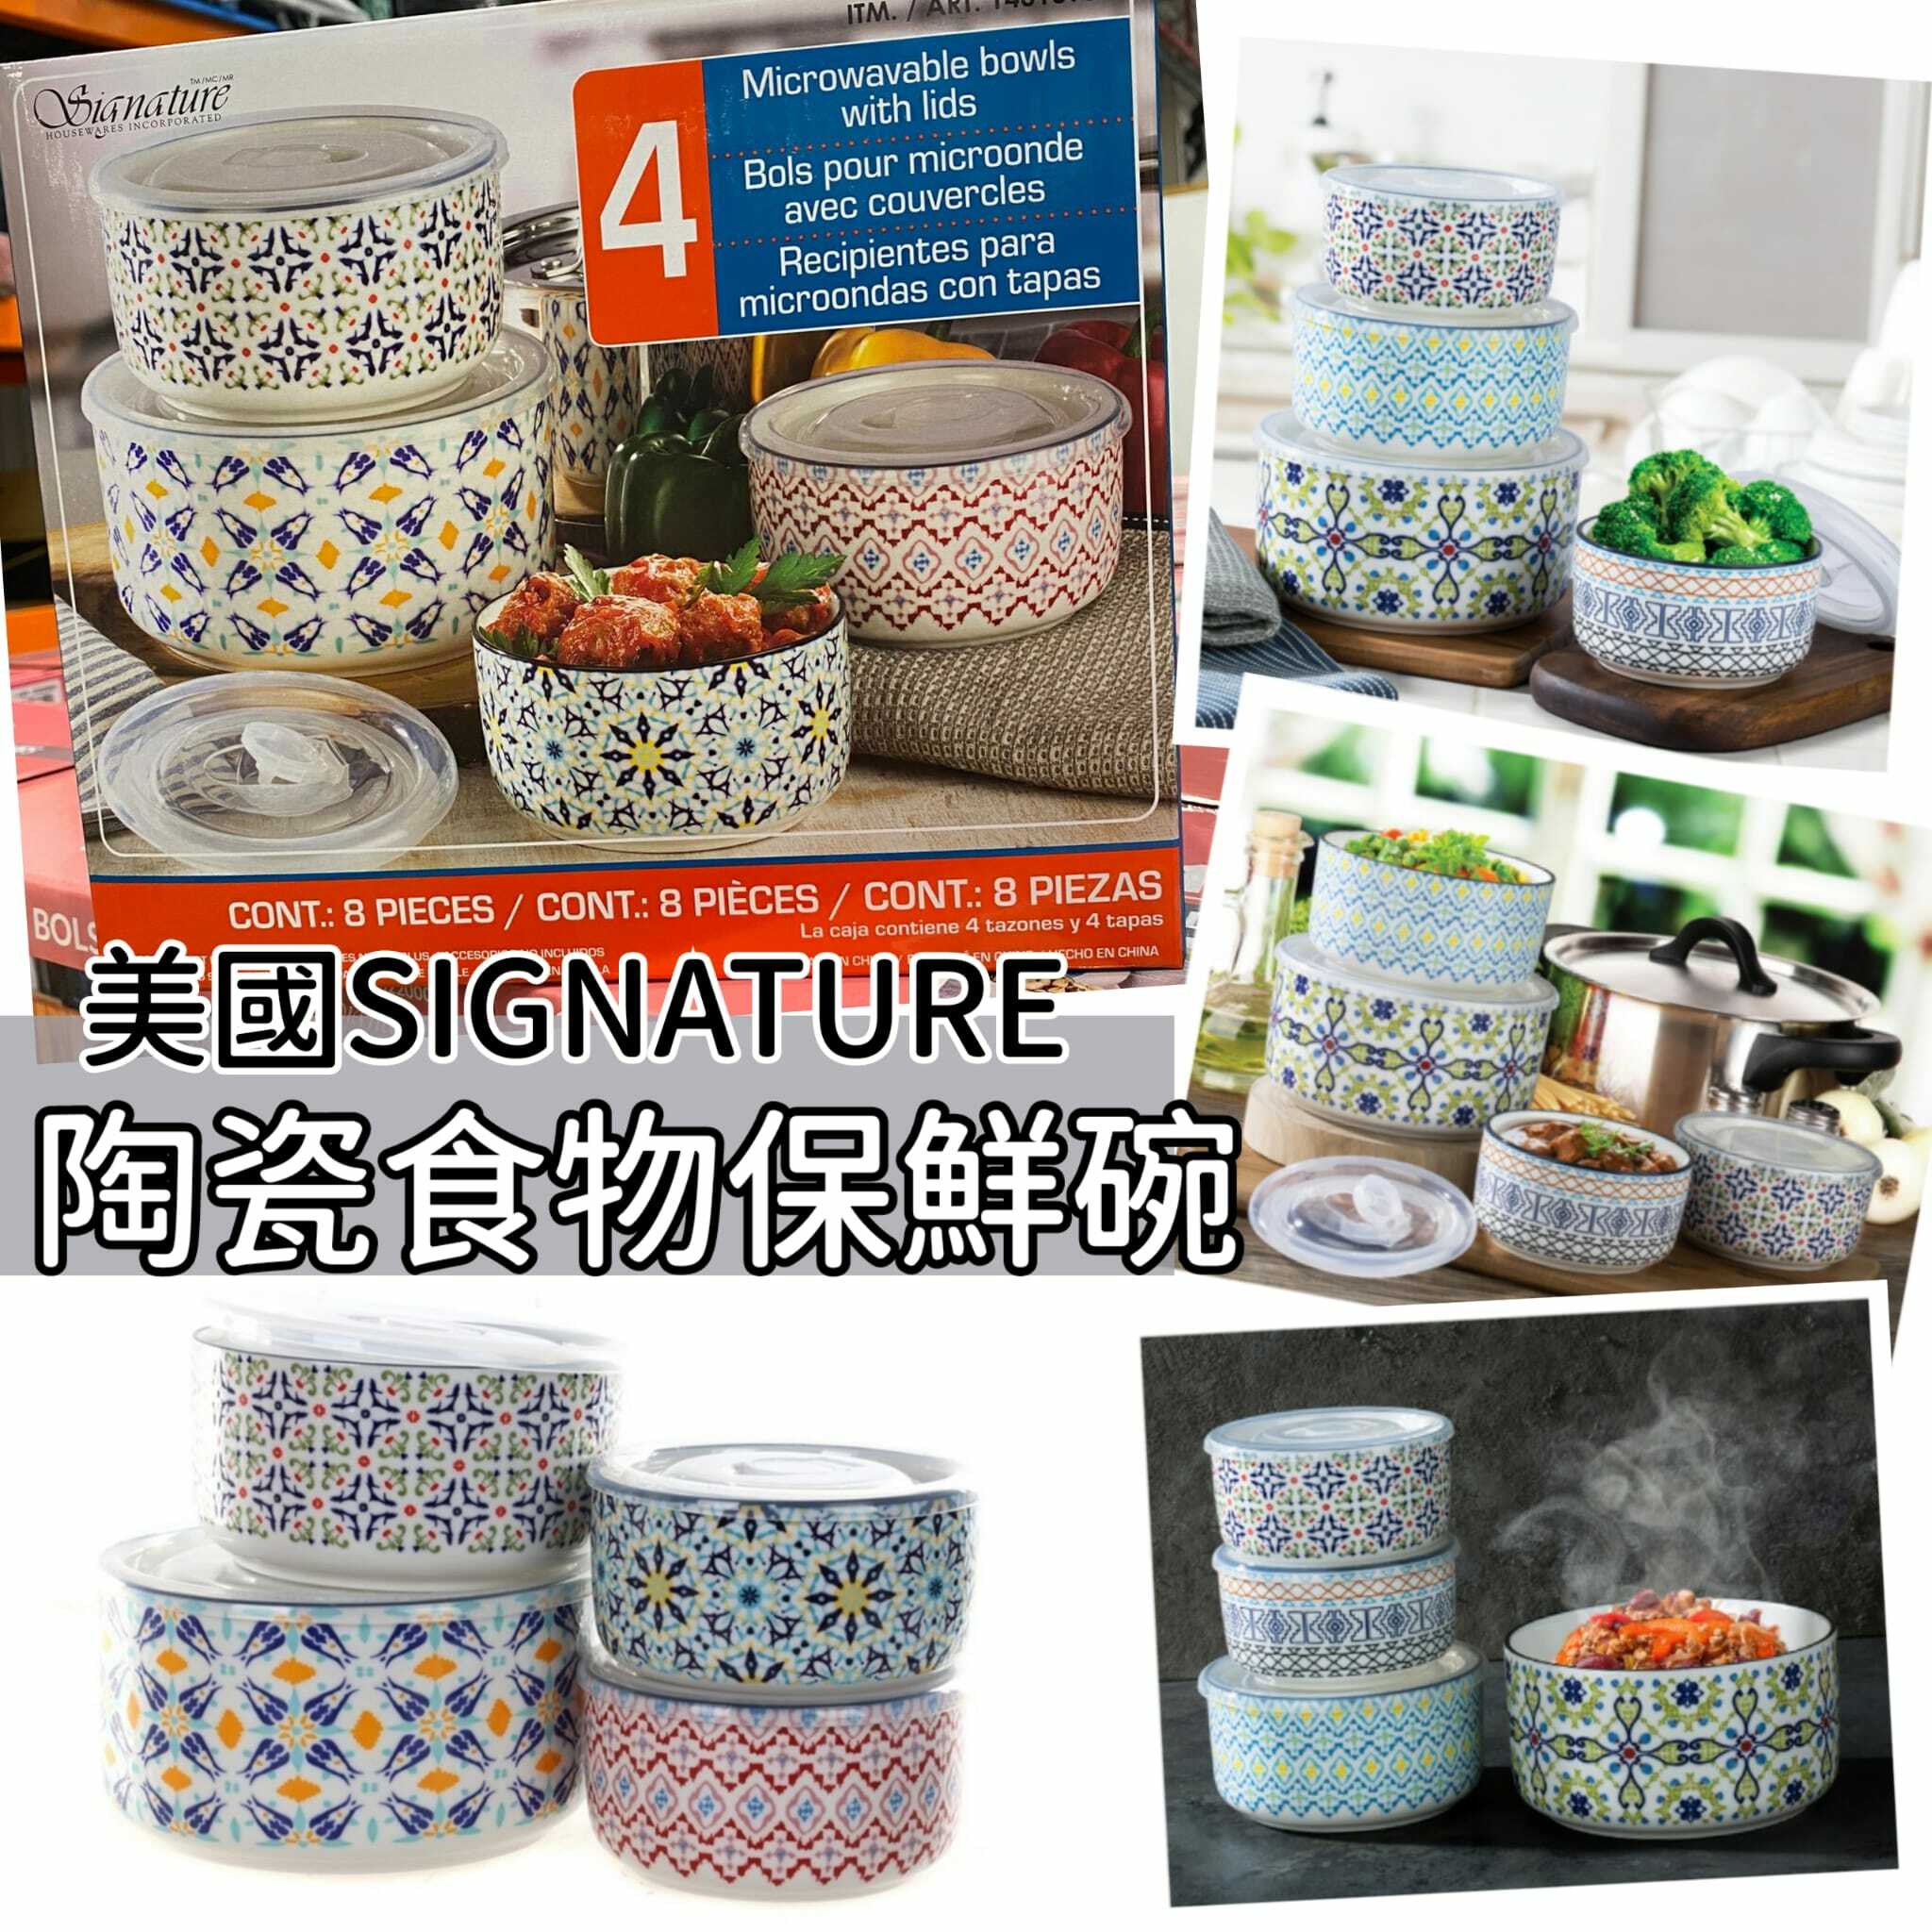 美國SIGNATURE 陶瓷食物保鮮碗(1套4個碗連蓋)